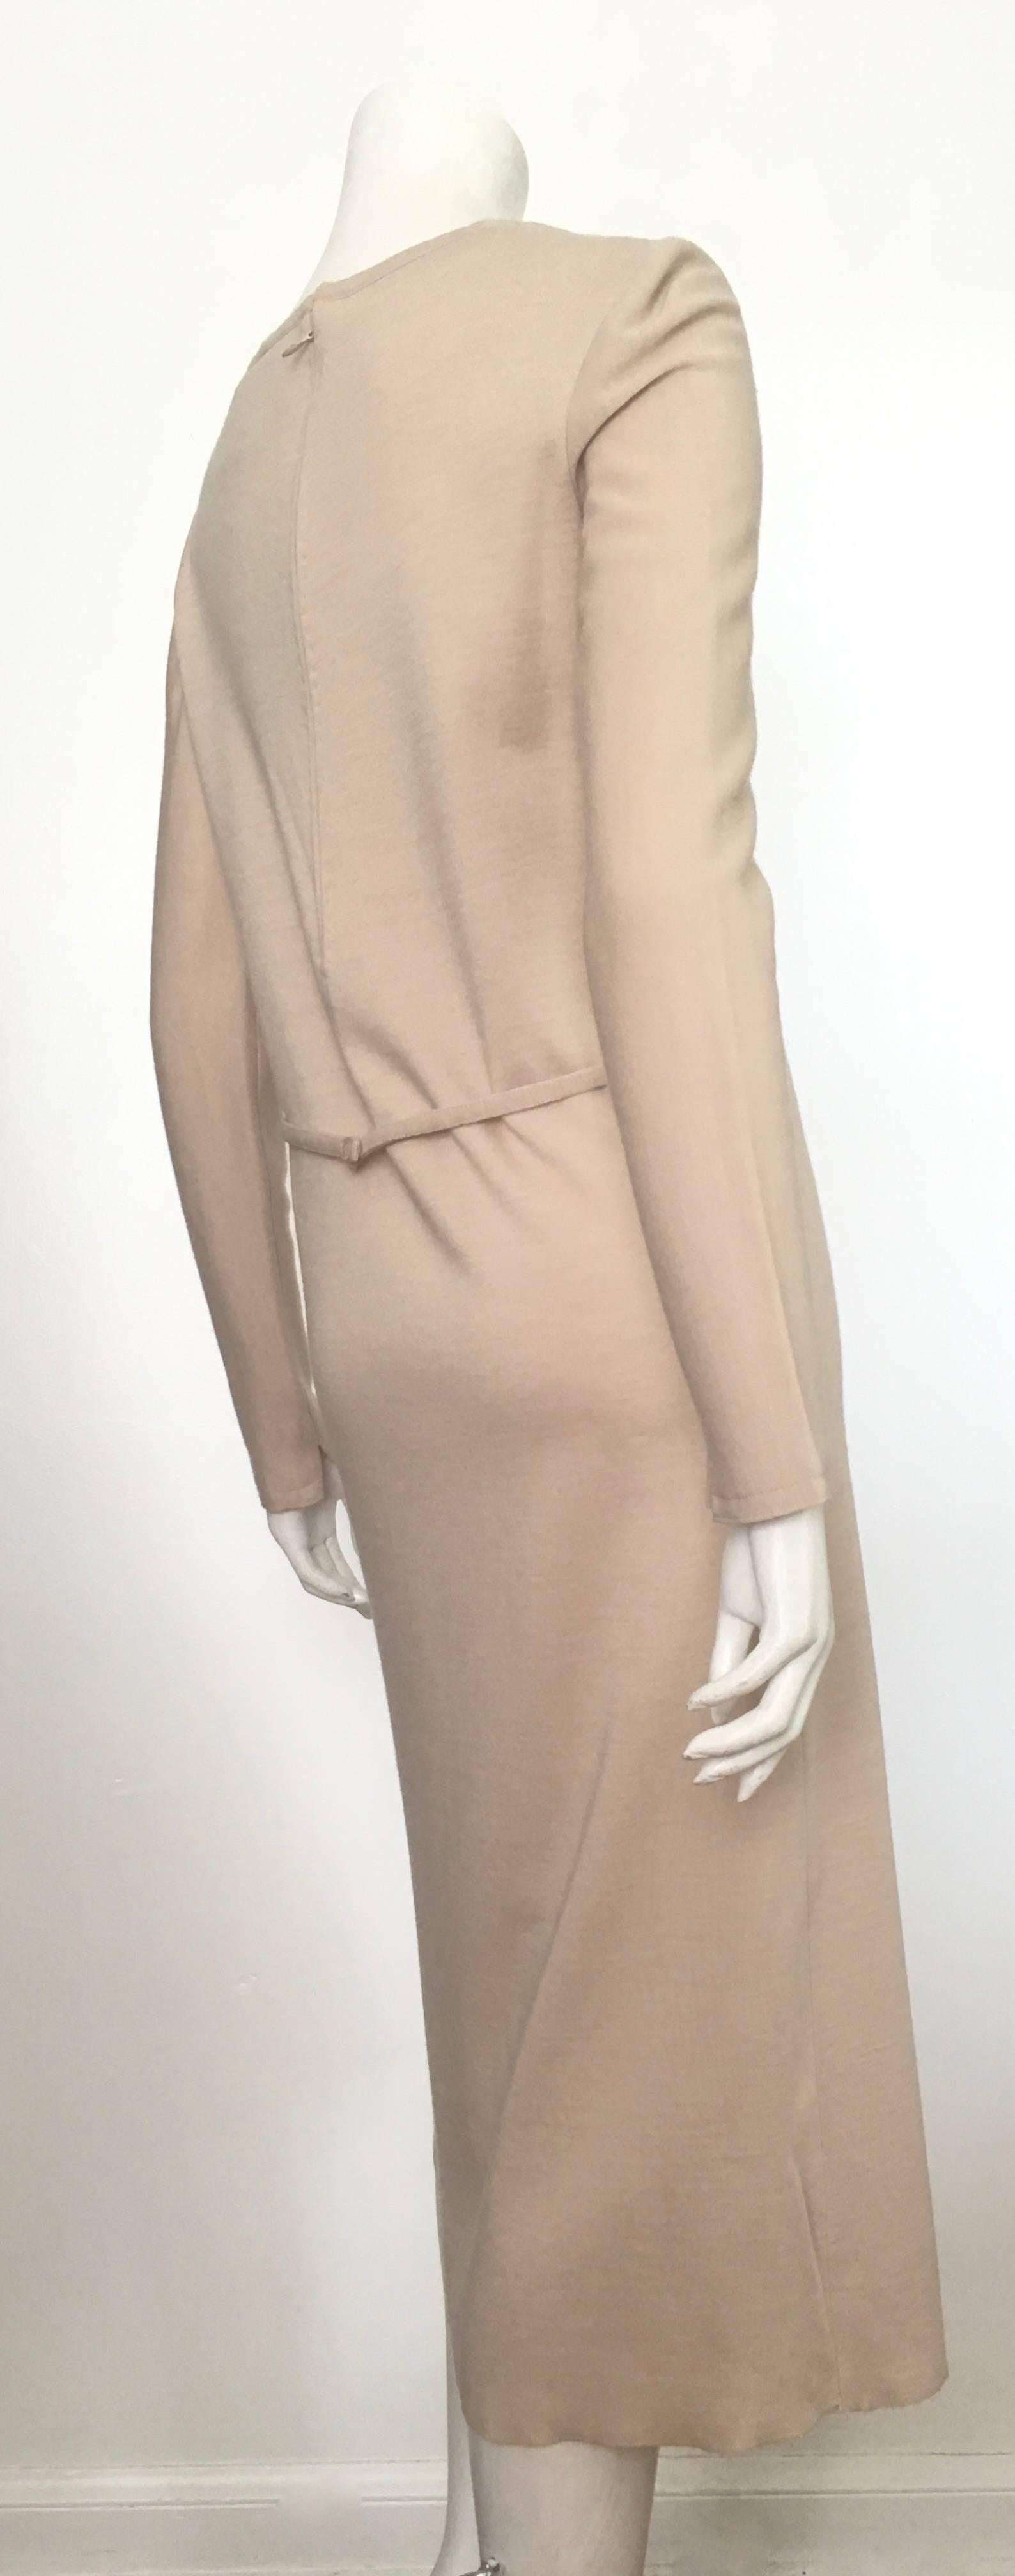 Geoffrey Beene Boutique 1970s Wool Knit Tan Long Sleeve Dress Size 8. For Sale 3